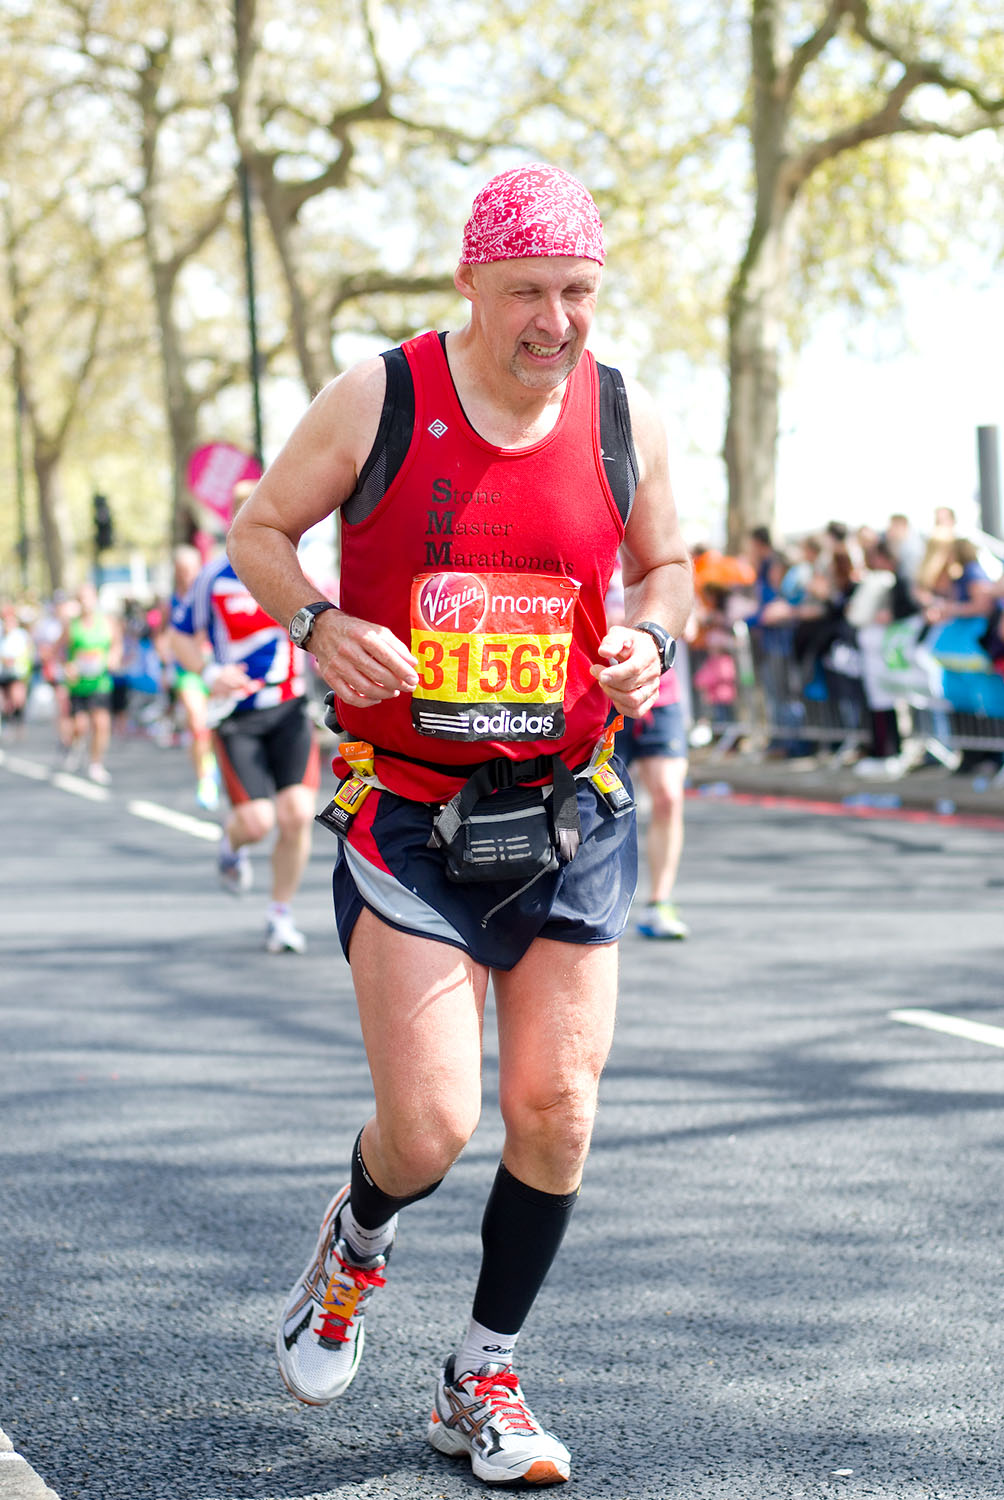  London Marathon 2012 - Mile 24.5 